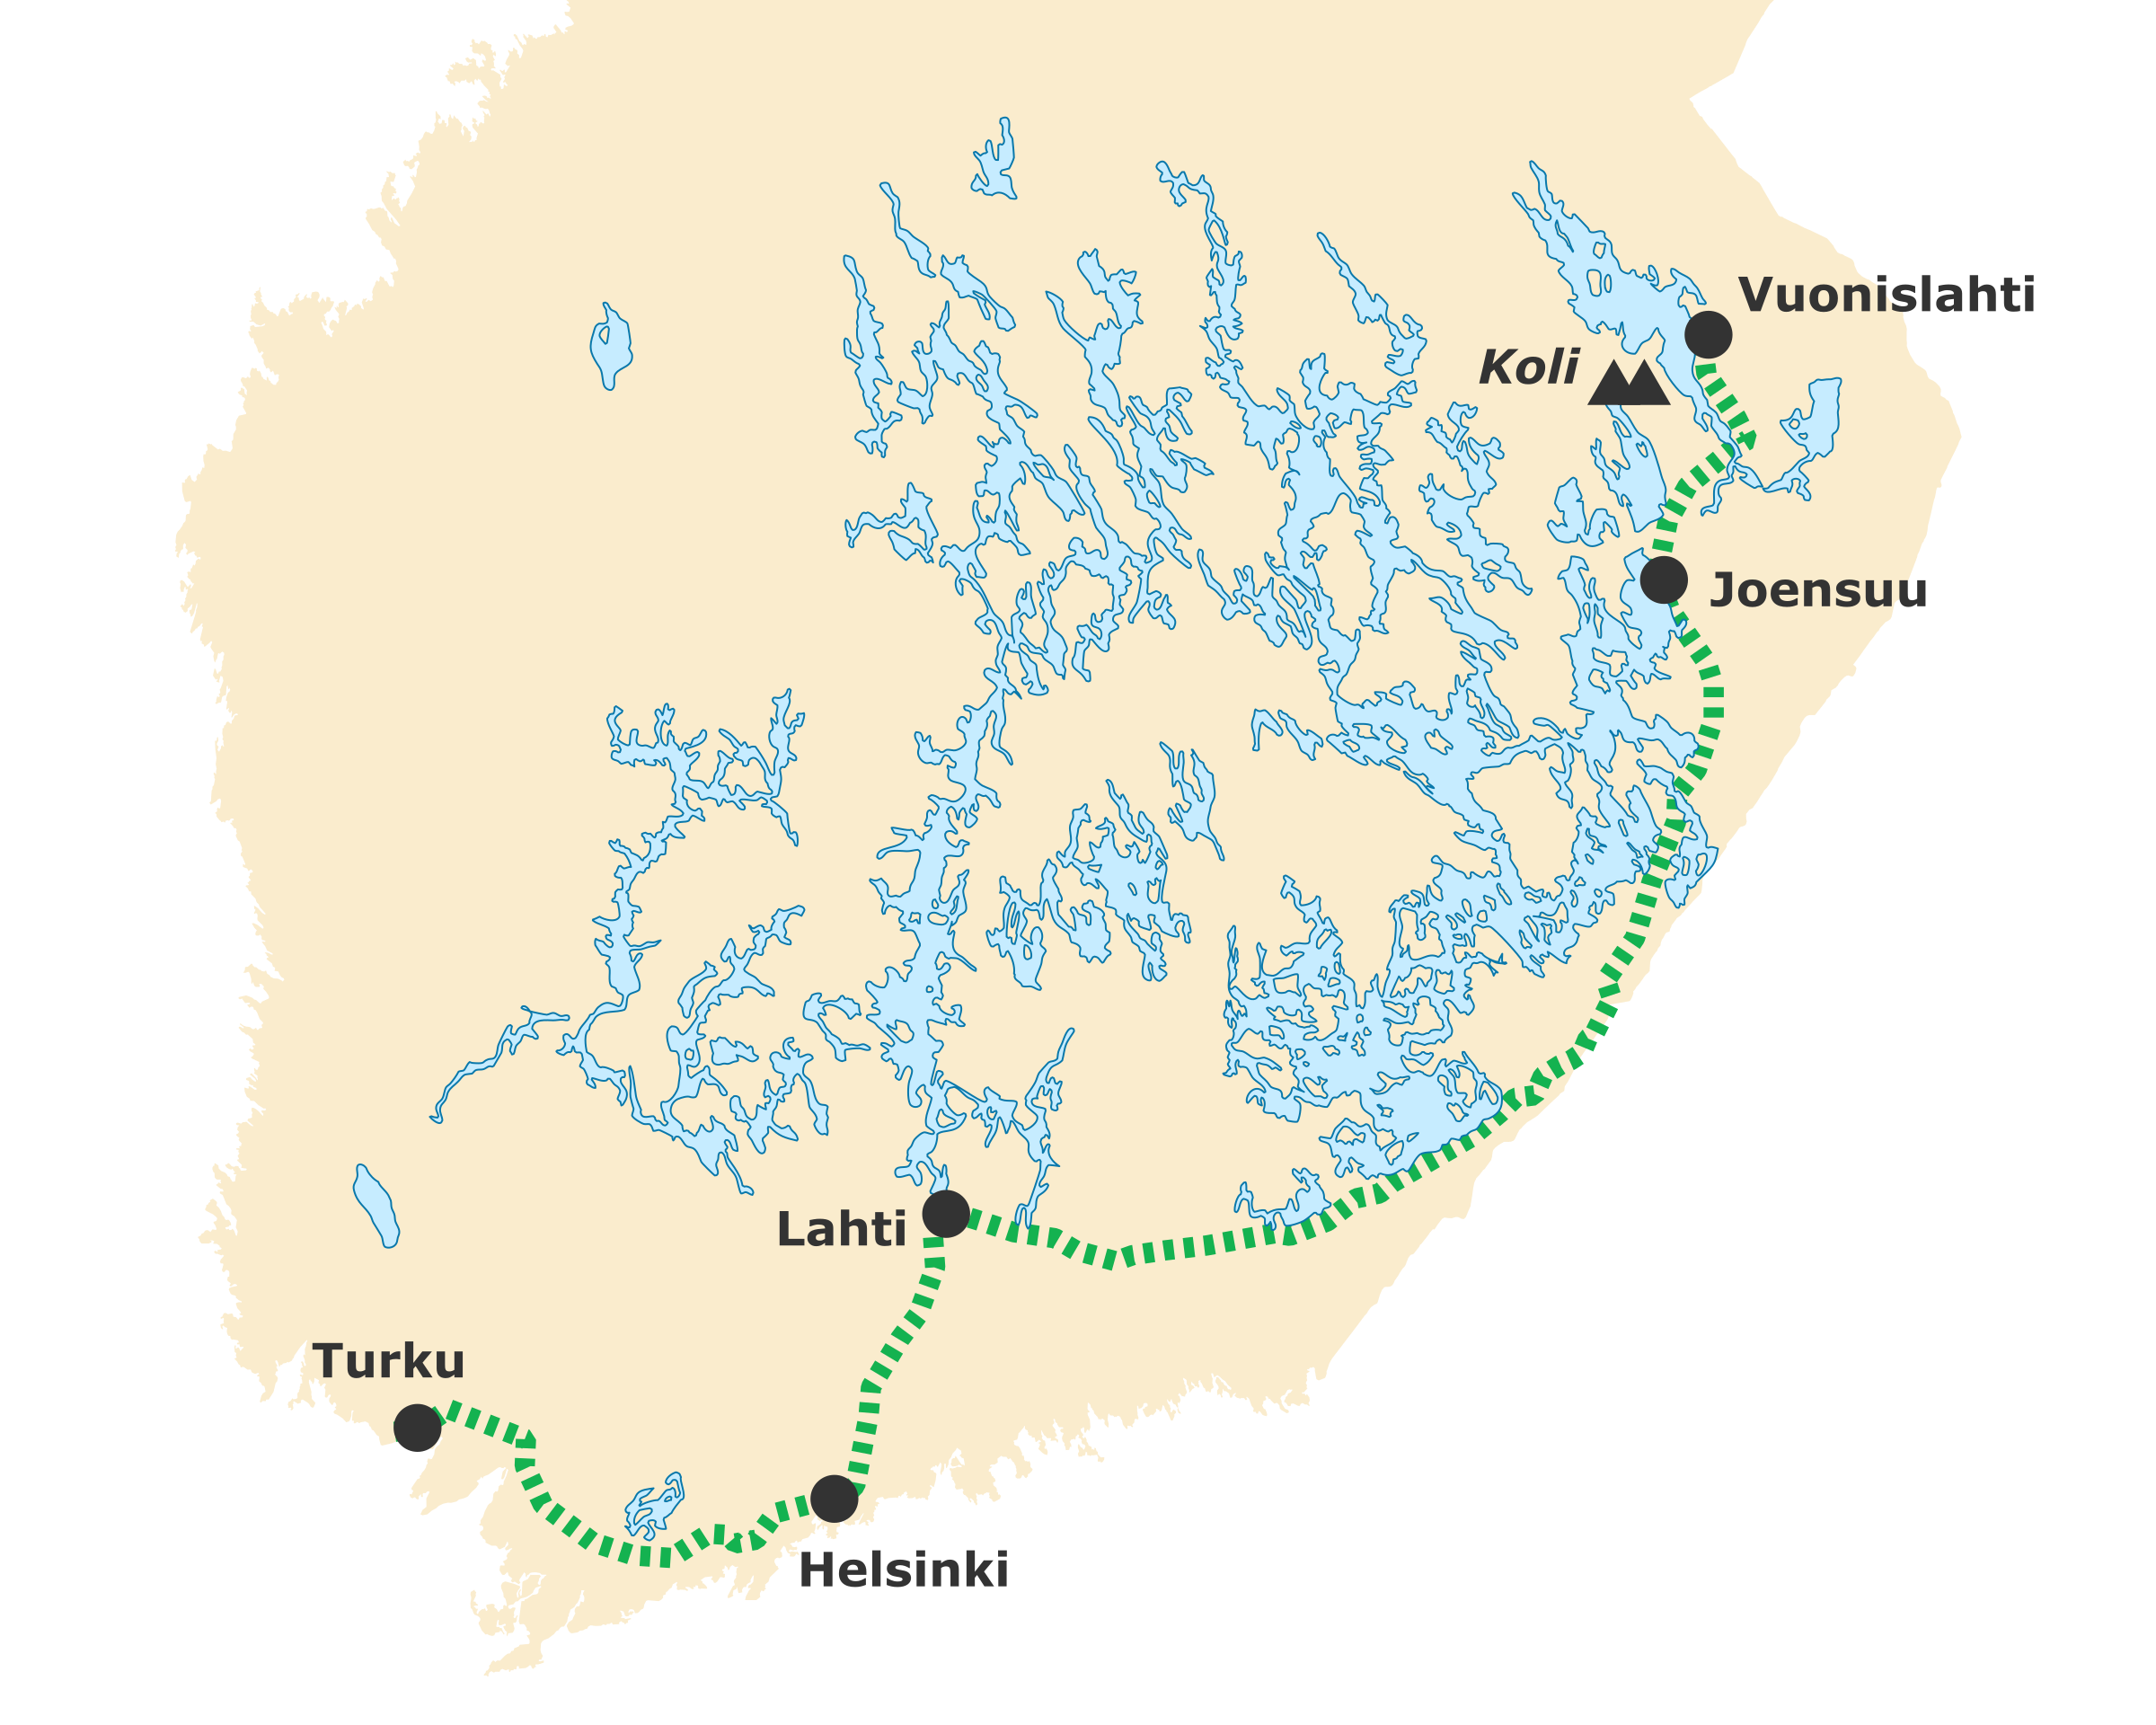 Karte: Mit dem Zug von Turku über Helsinki und Joensuu nach Vuonislahti